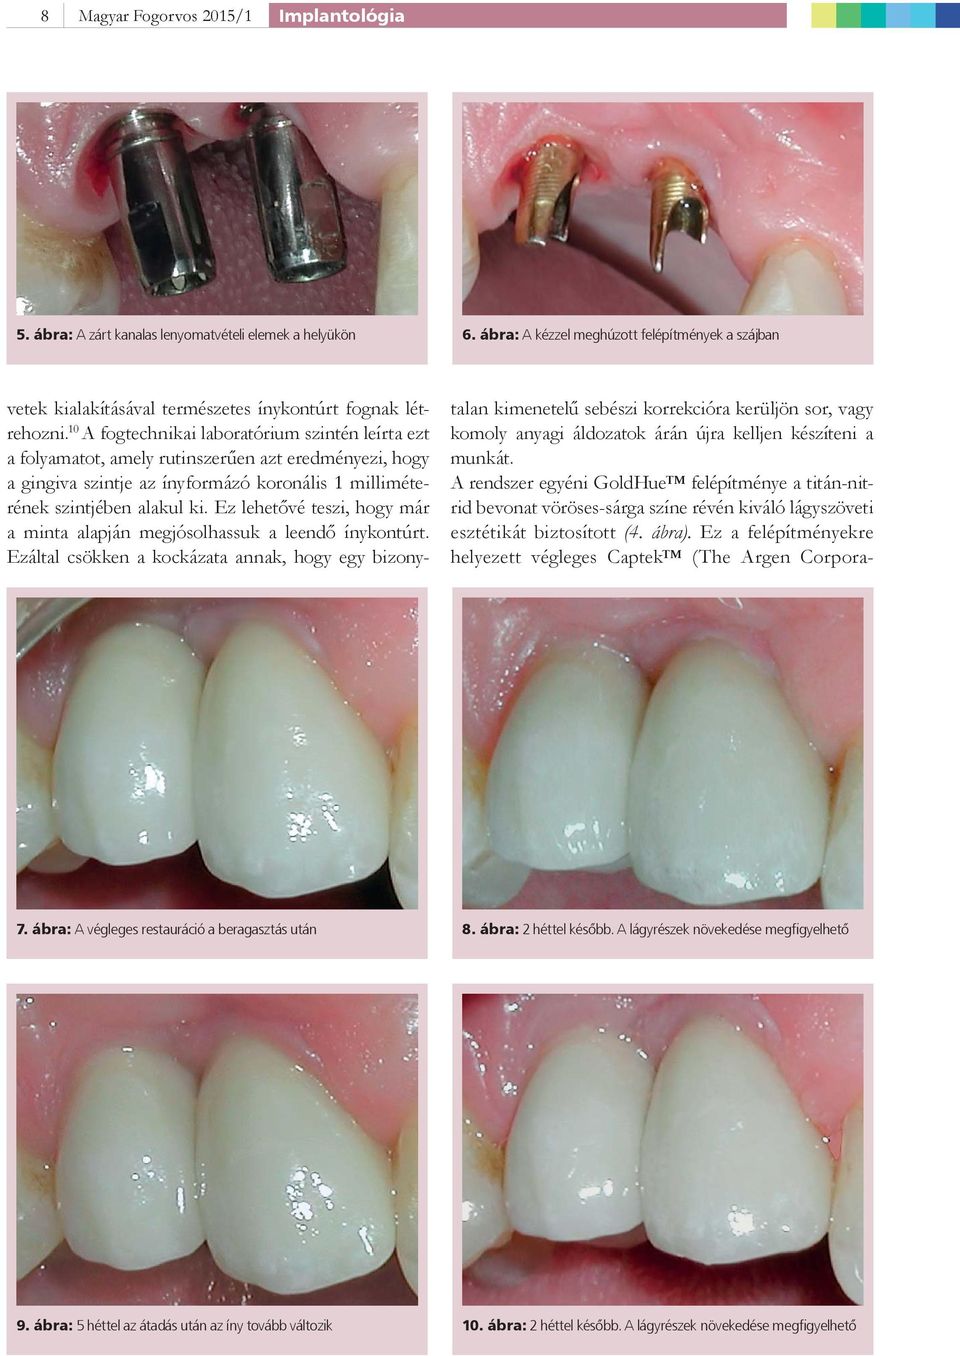 10 A fogtechnikai laboratórium szintén leírta ezt a folyamatot, amely rutinszerűen azt eredményezi, hogy a gingiva szintje az ínyformázó koronális 1 milliméterének szintjében alakul ki.